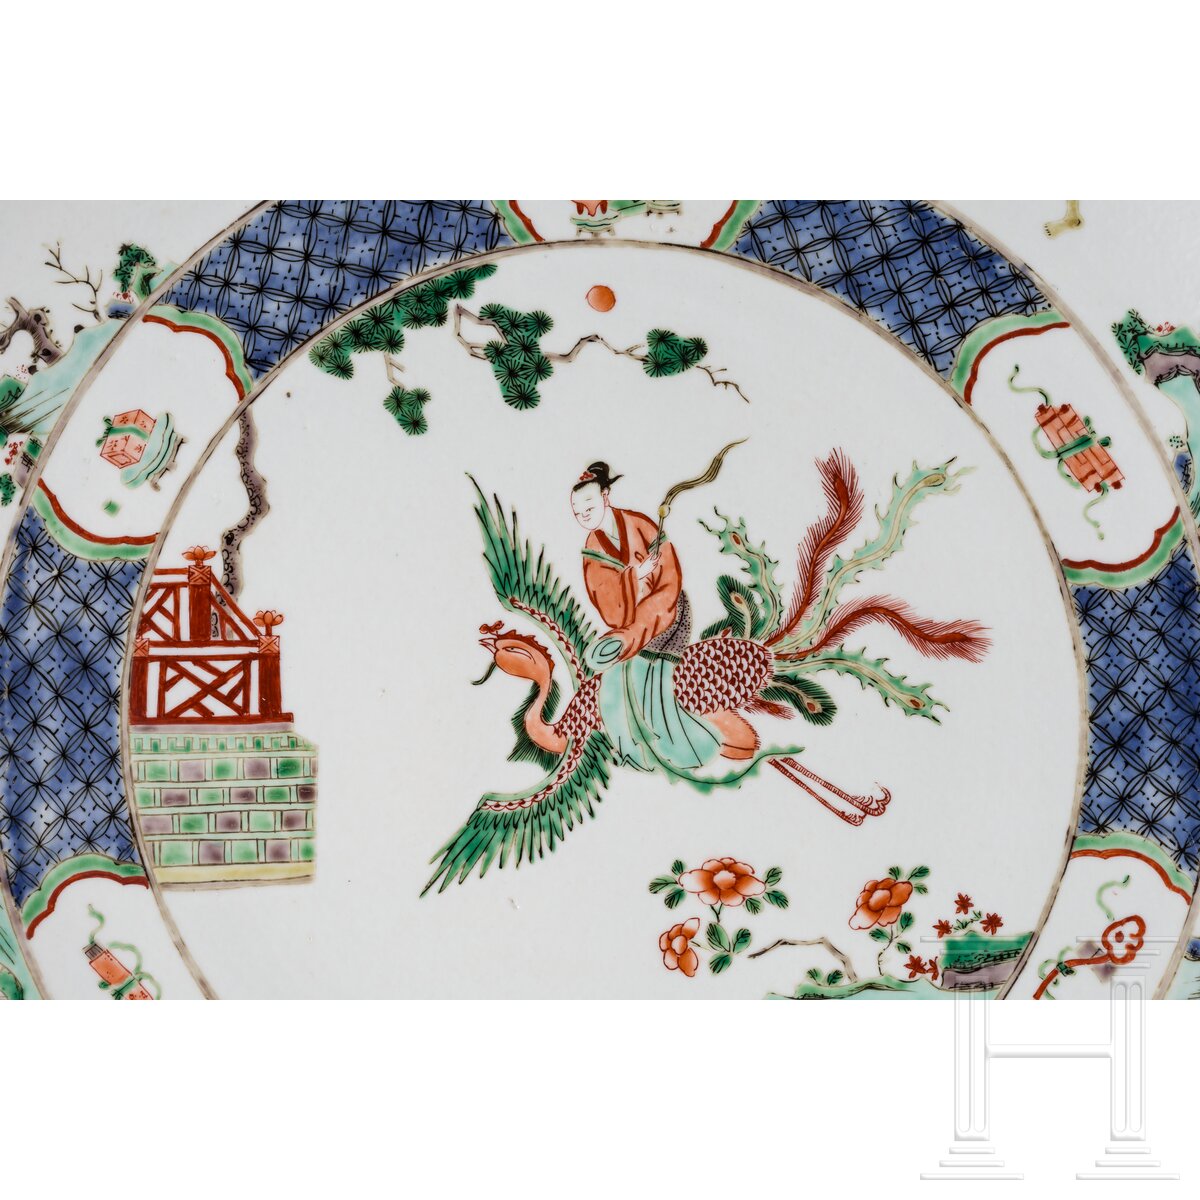 Zwei große Famille-verte-Teller mit figürlichem Dekor, China, wohl Kangxi-Periode (18. Jhdt.) - Image 4 of 41